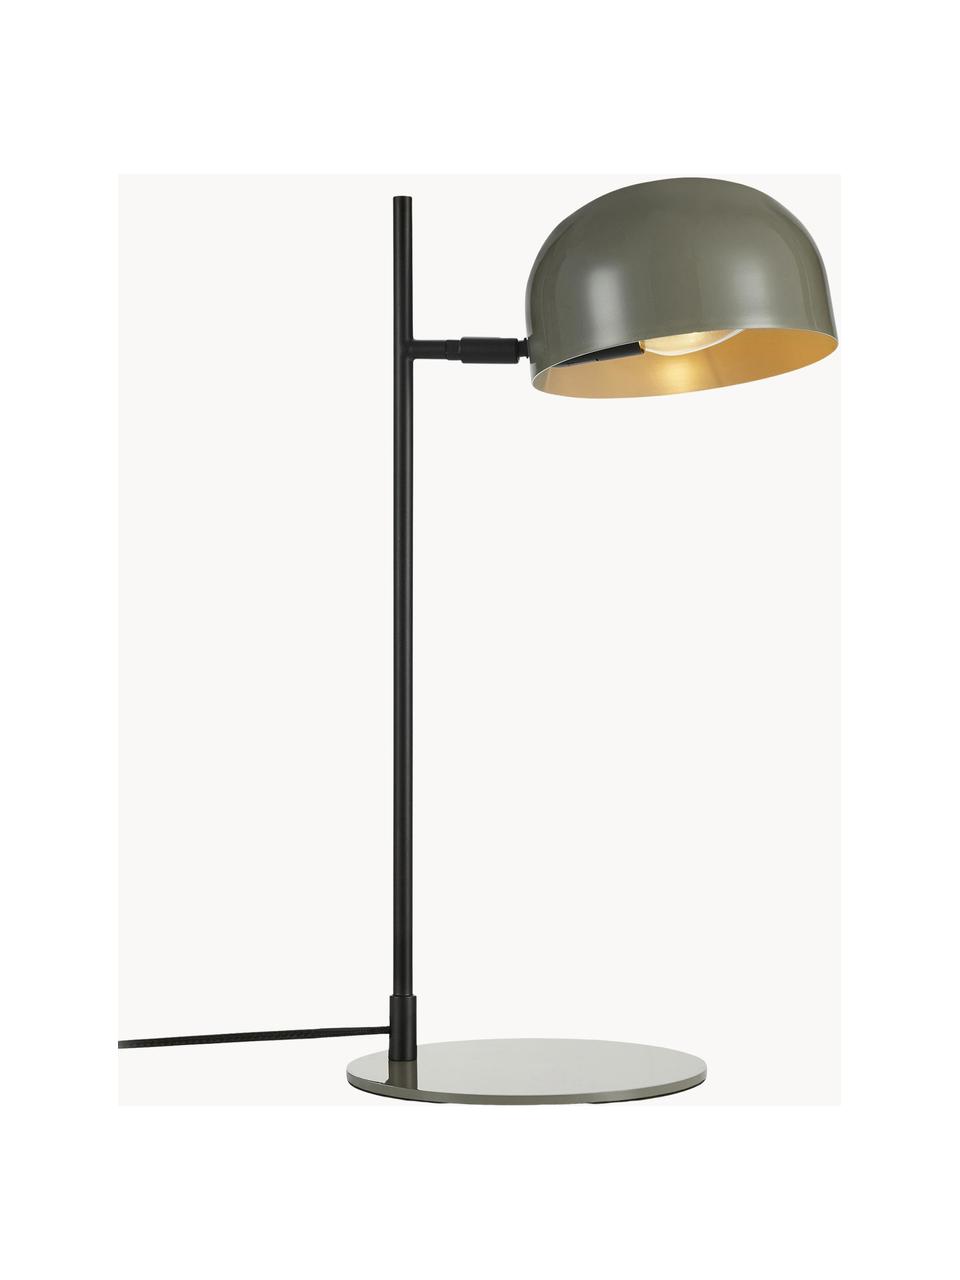 Tischlampe Pose, Lampenschirm: Metall, beschichtet, Greige, Schwarz, T 29 x H 49 cm